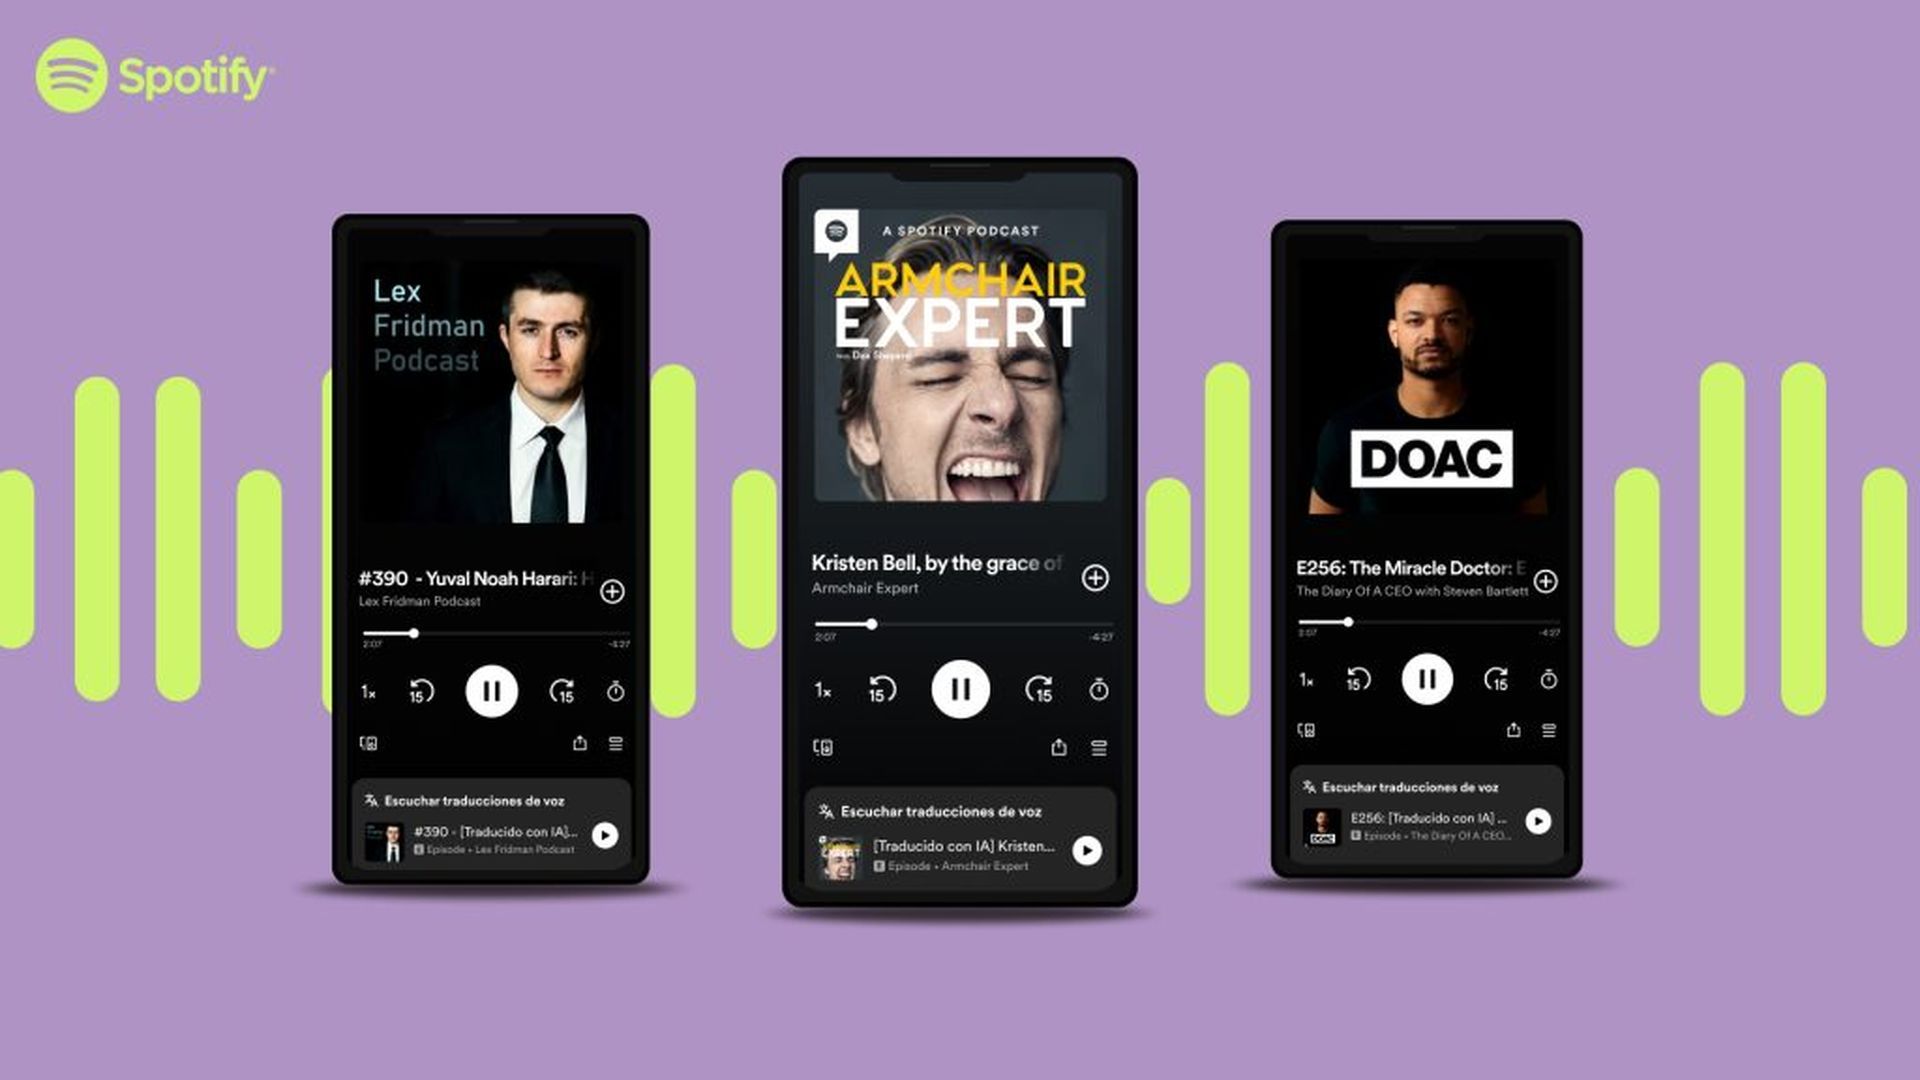 Descubra o inovador recurso de tradução de voz de IA do Spotify, levando podcasts para audiências globais em seu próprio idioma. Explore agora!